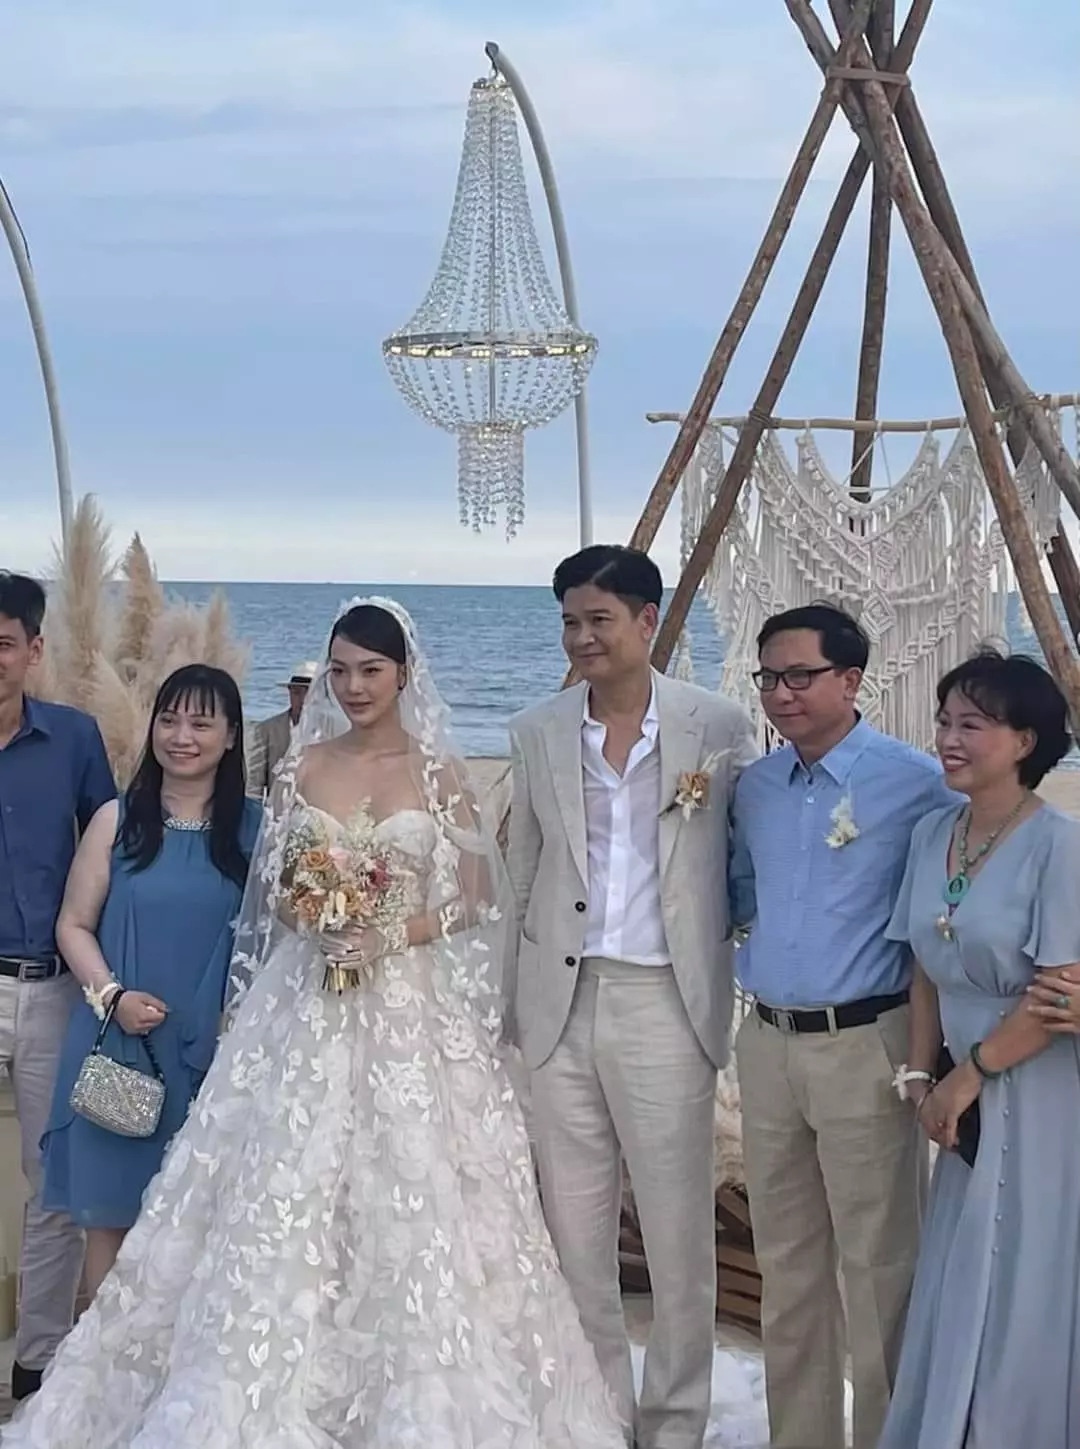 Chuyện showbiz: Lộ ảnh cận mặt chồng ca sĩ Minh Hằng trong đám cưới